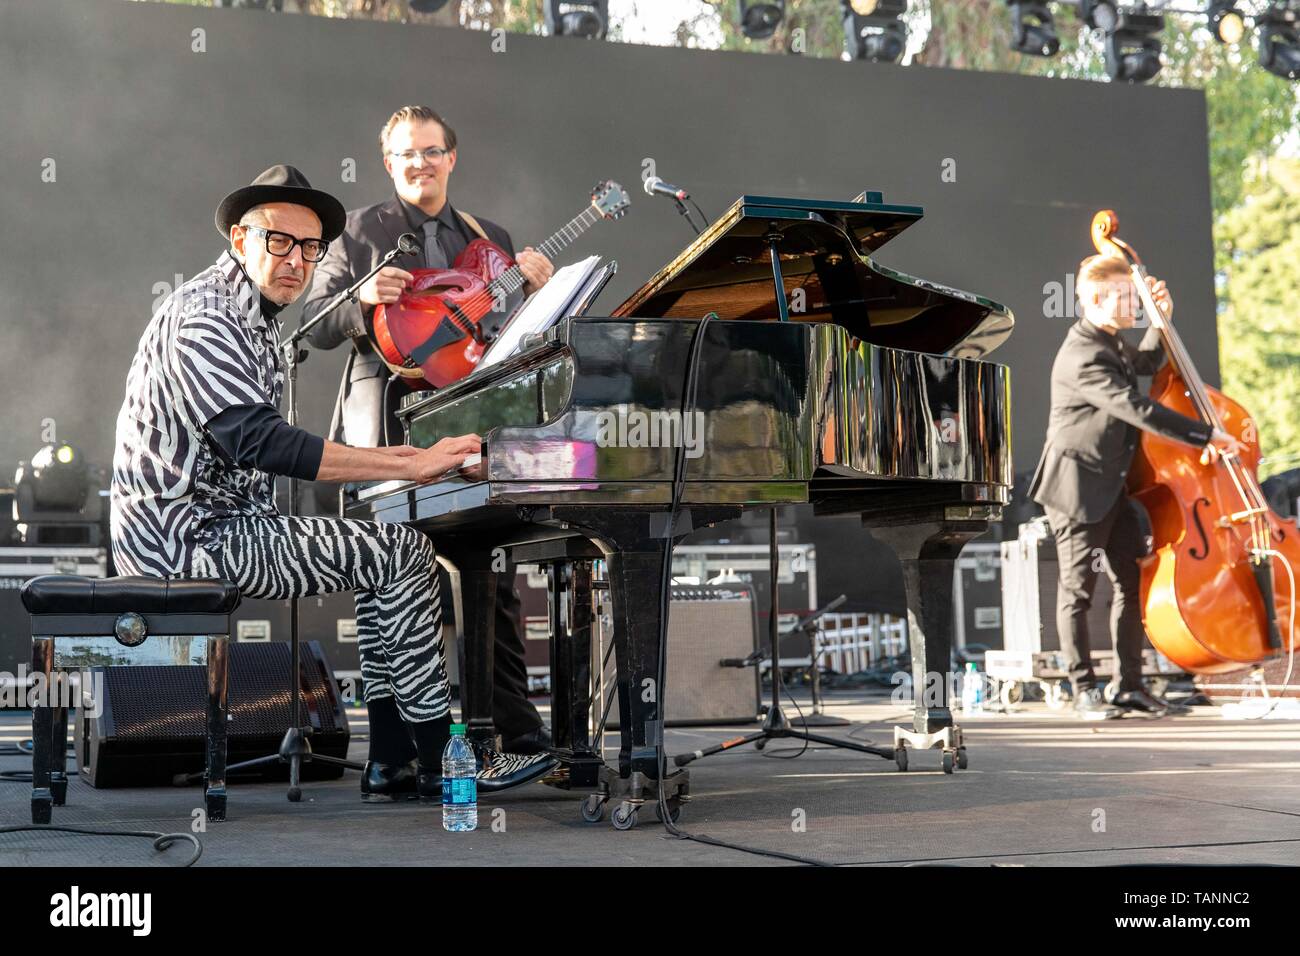 Mayo 26, 2019 - Napa, California, EE.UU. - Jeff Goldblum durante el Festival de Música BottleRock en Napa, California (Crédito de la Imagen: © Daniel DeSlover/ZUMA Wire) Foto de stock